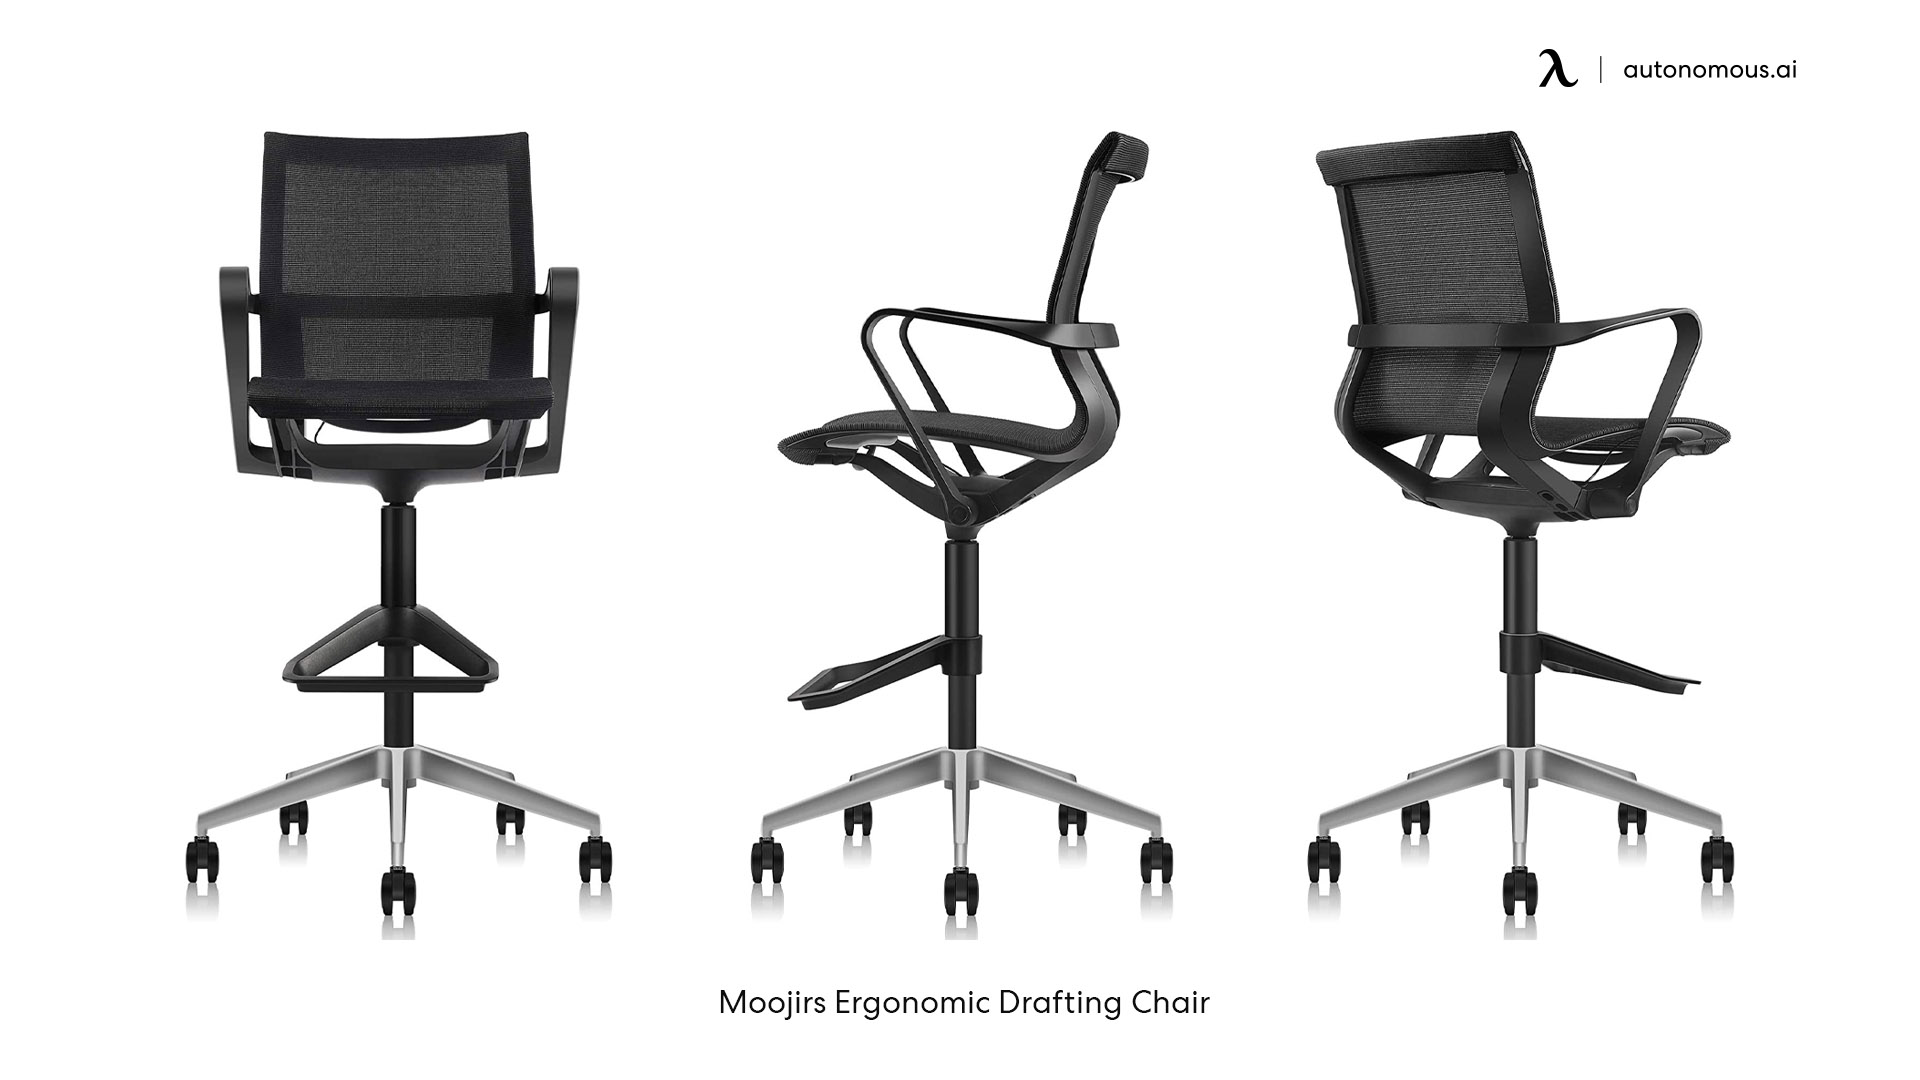 Moojirs Ergonomic Drafting Chair